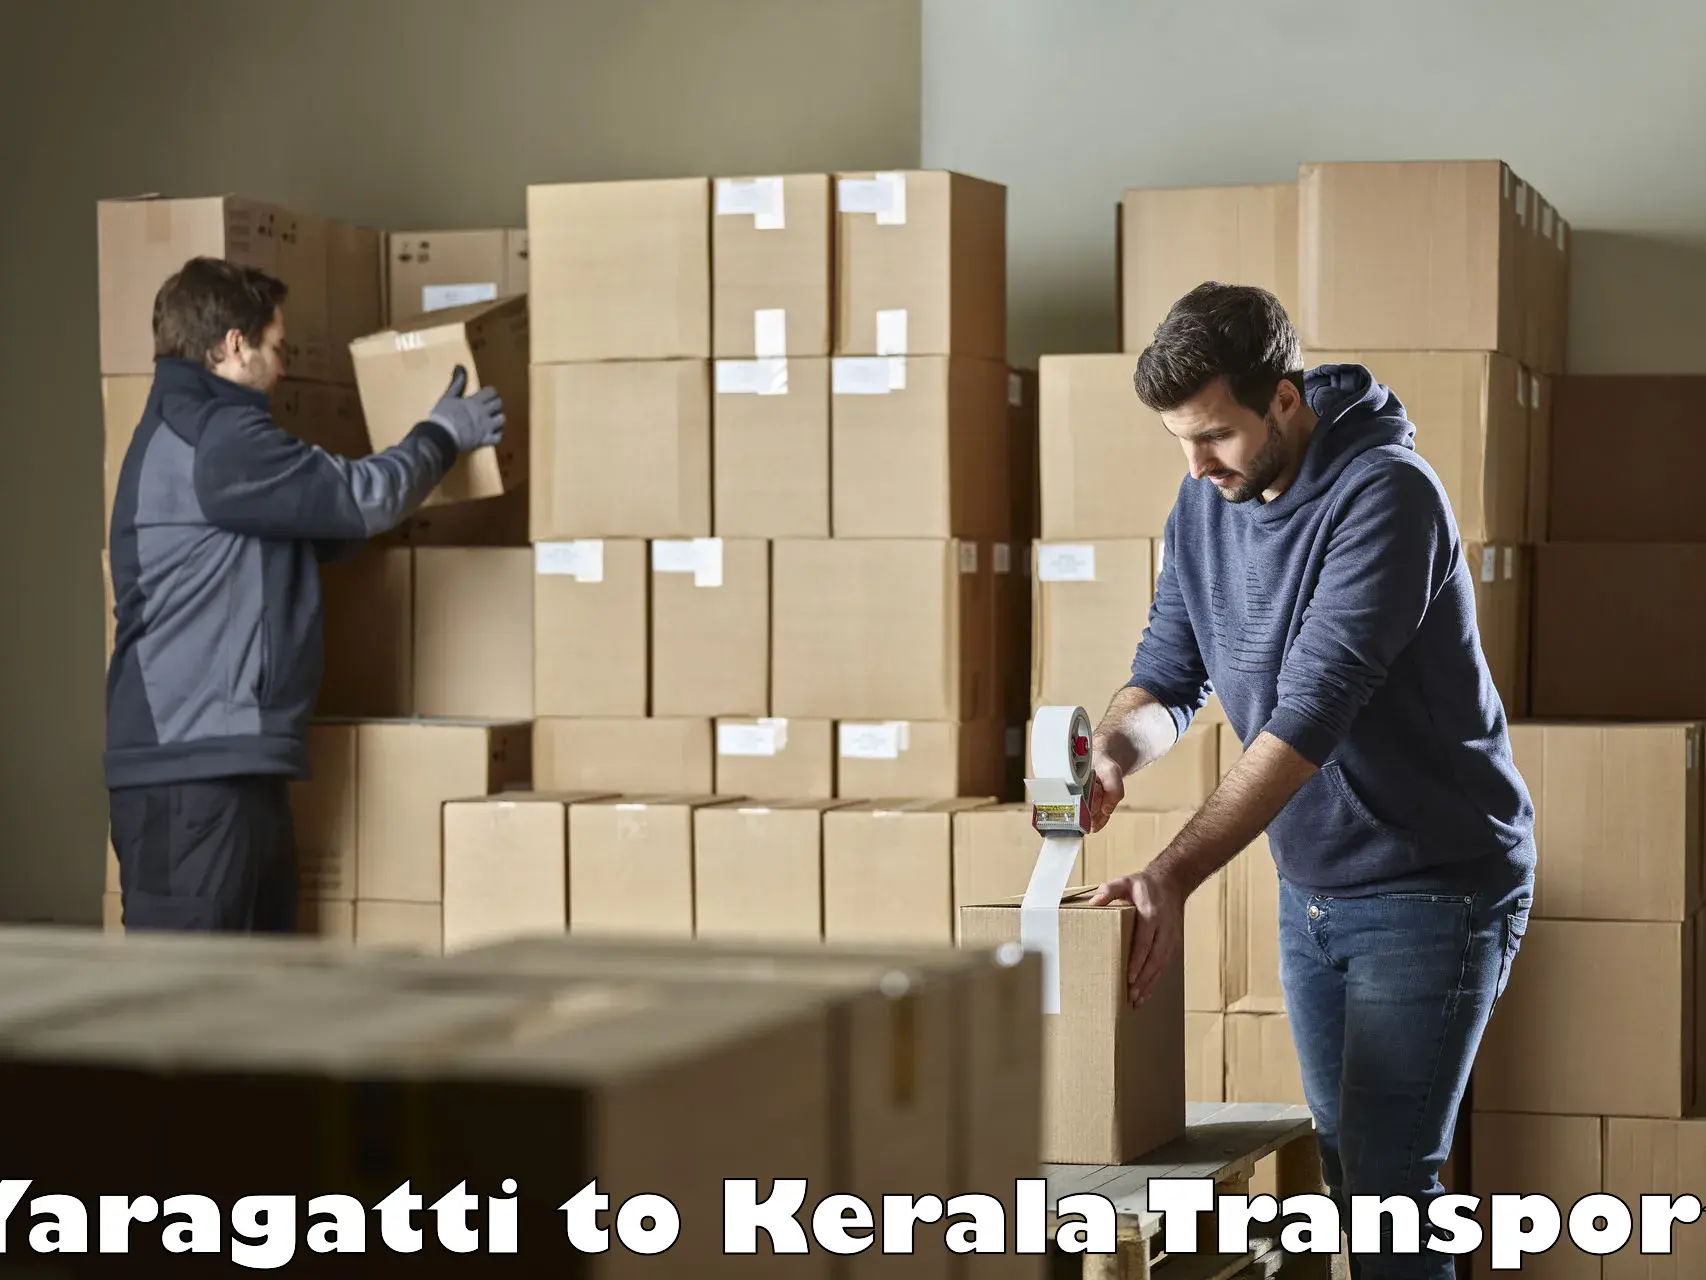 Bike shipping service Yaragatti to Kerala